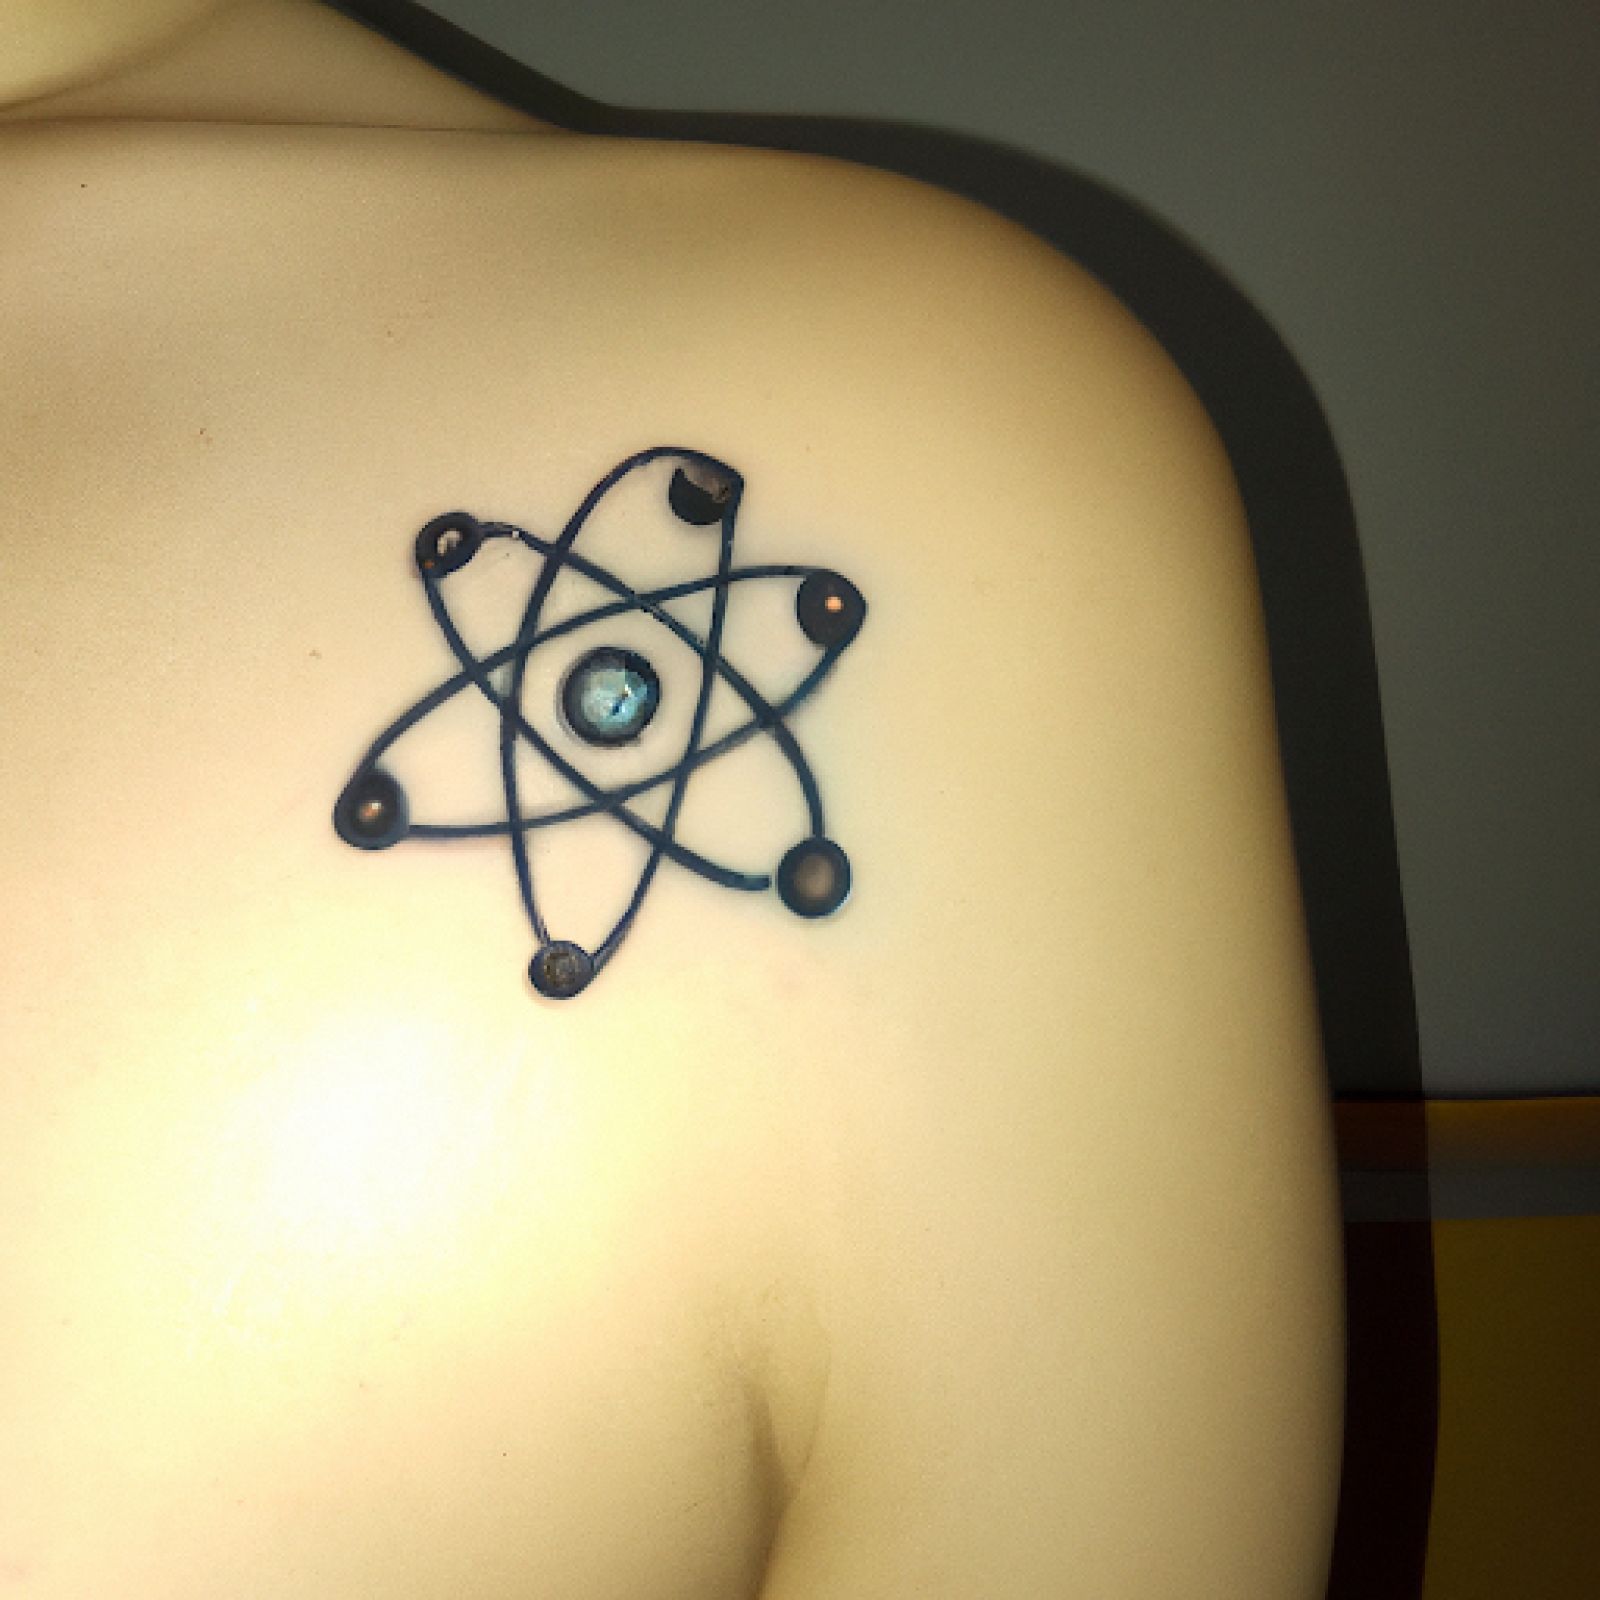 Atom tattoo on back for women